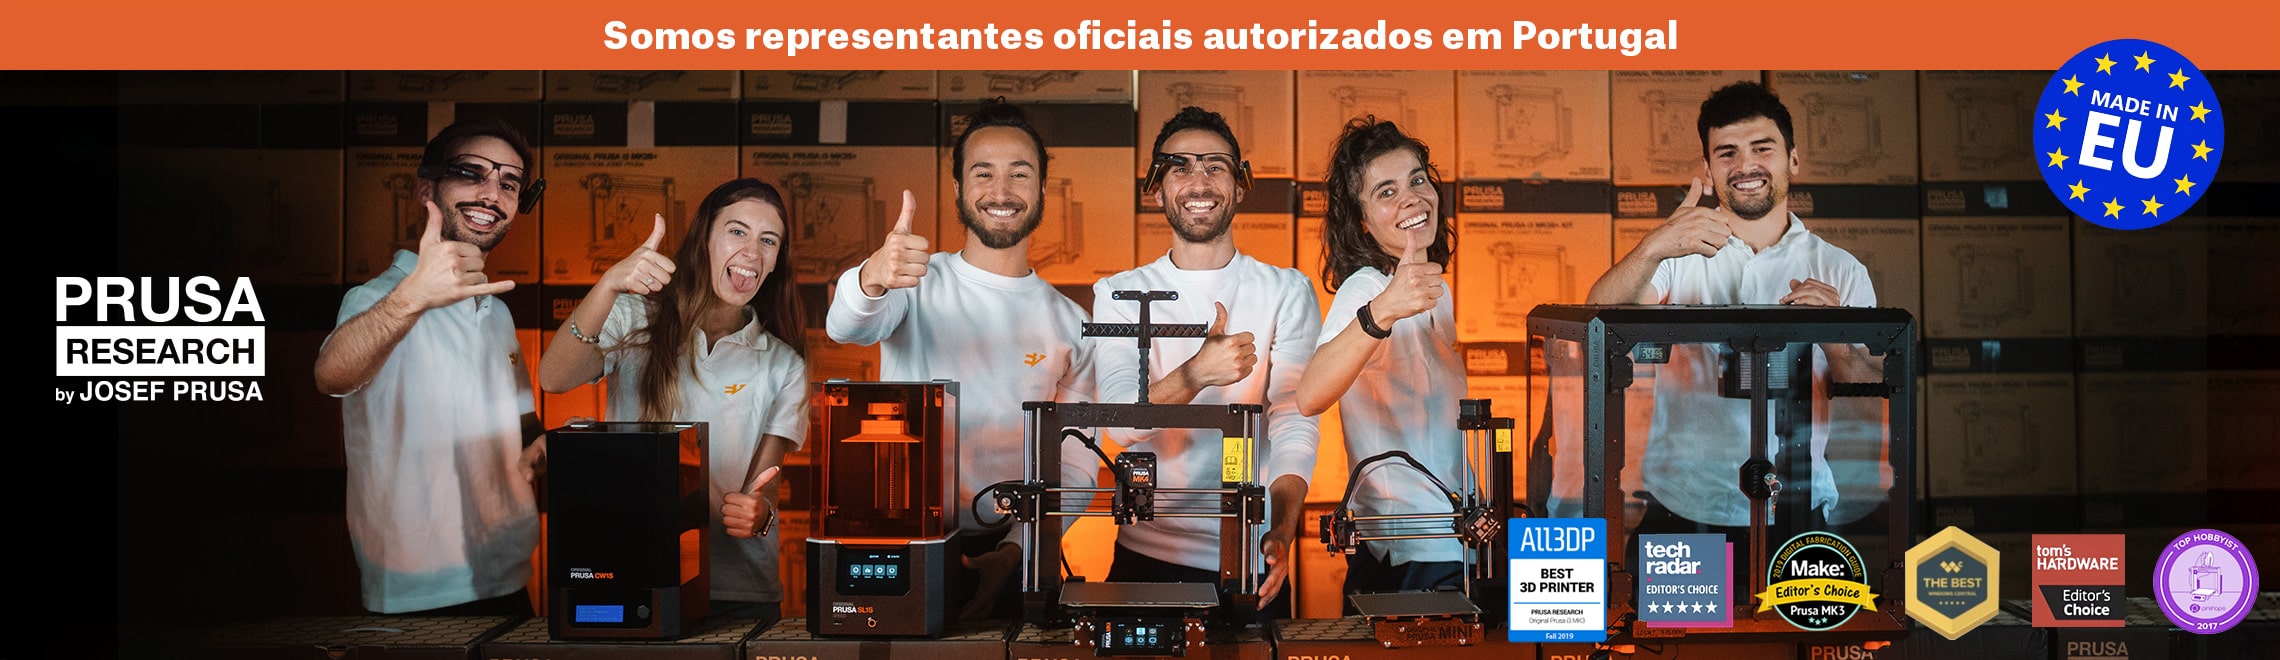 Banner da equipa evolt, revendedores da marca de impressão 3D PRUSA em Portugal